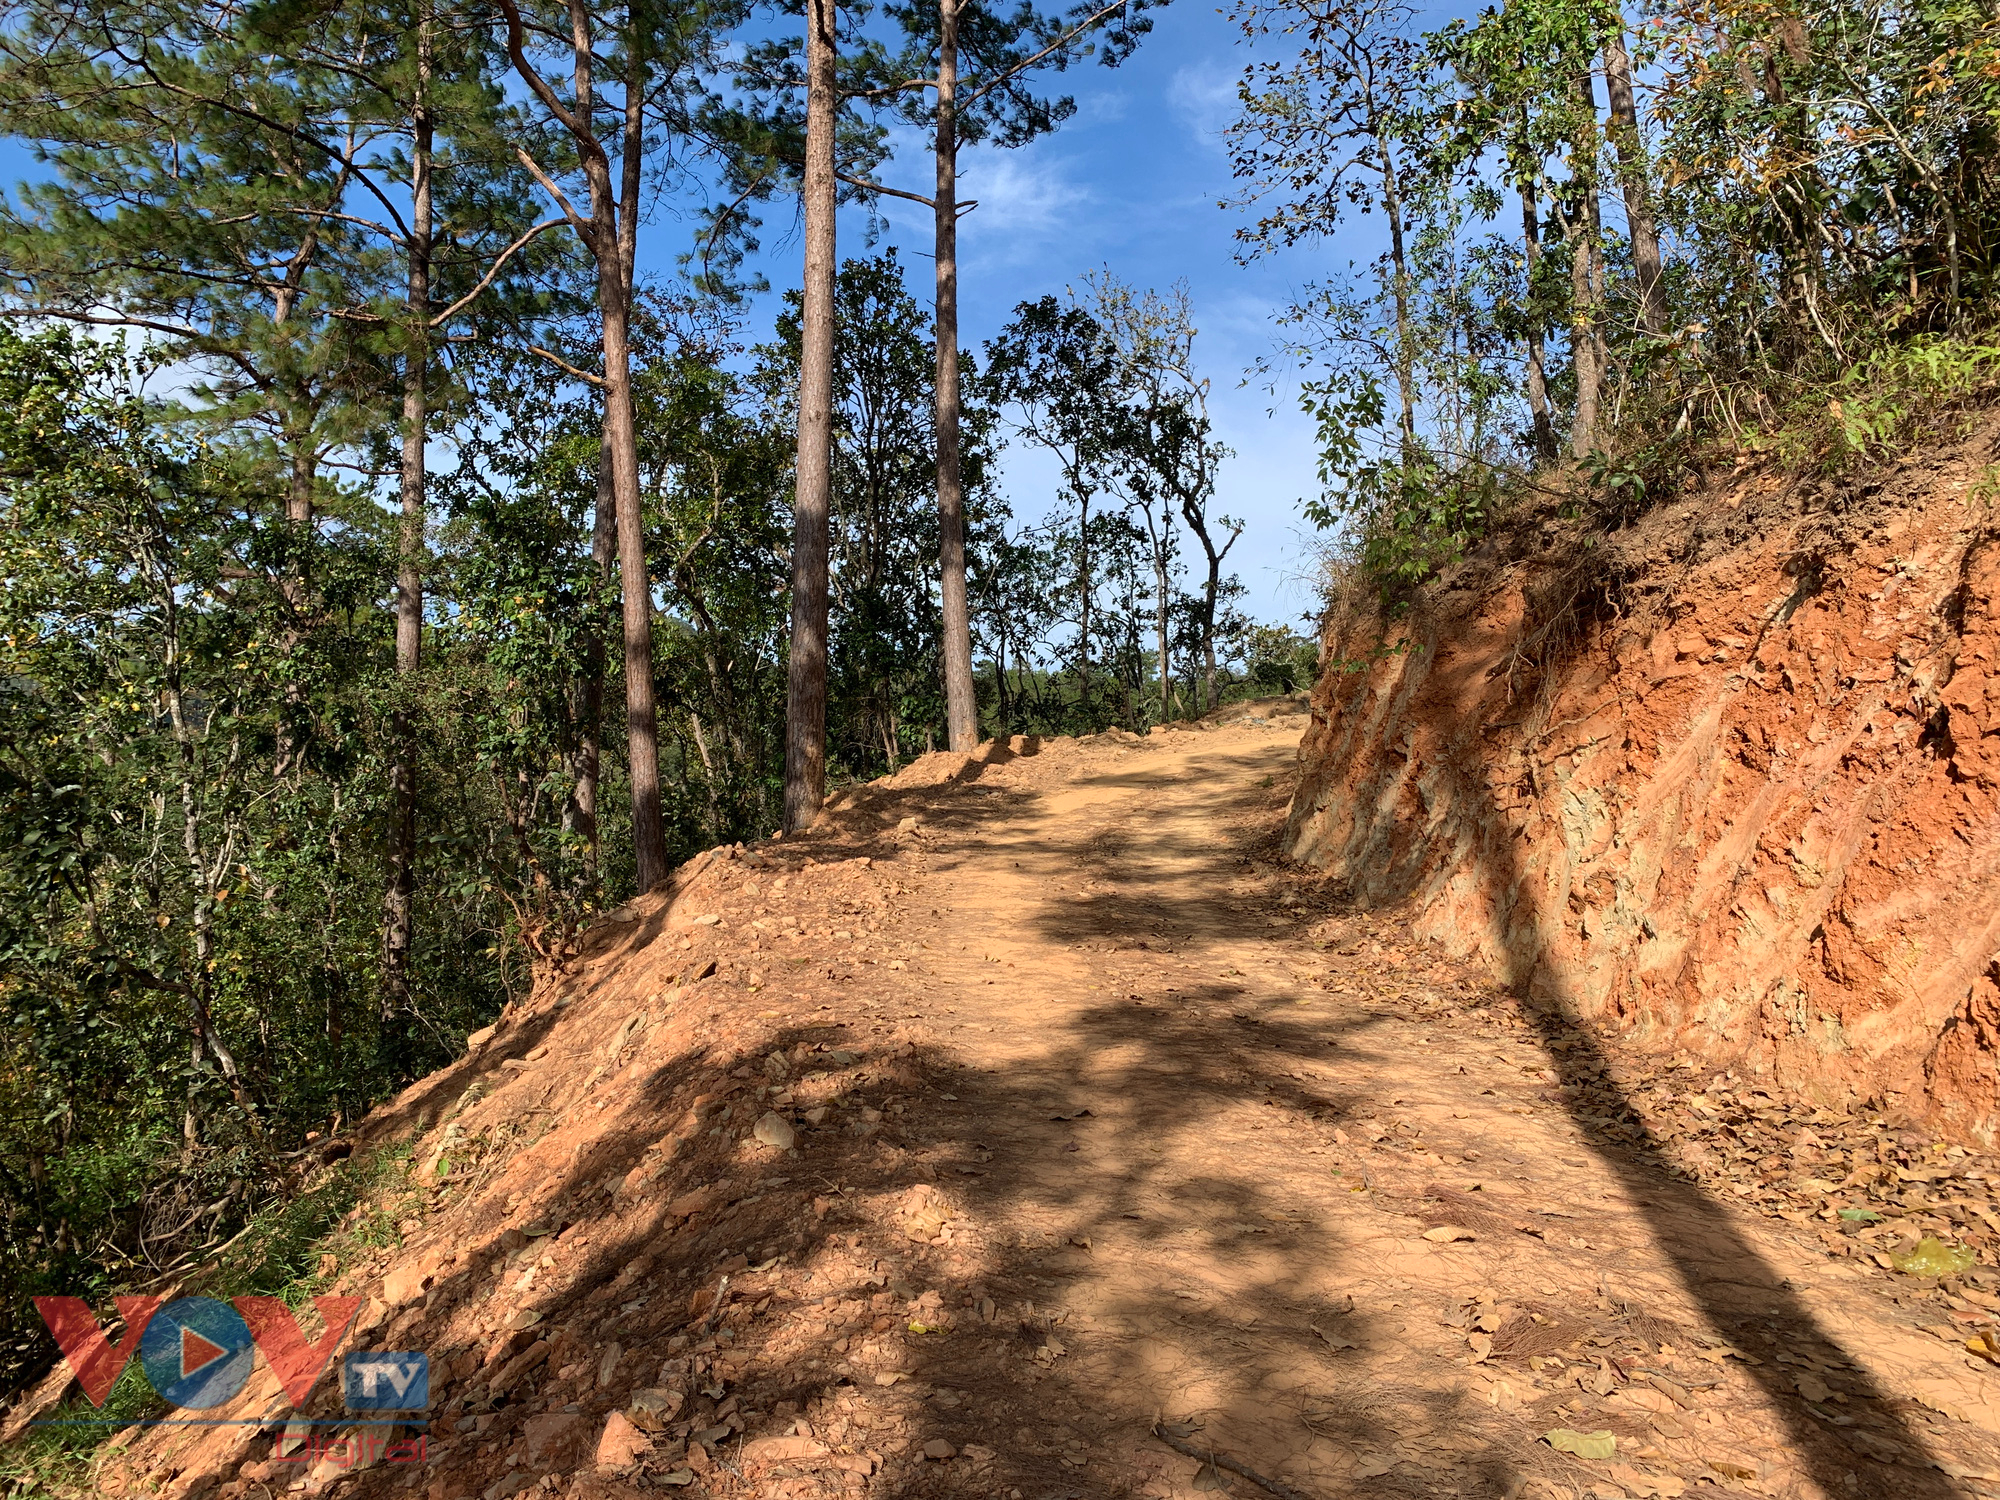 Cận cảnh rừng Quốc gia tại Đắk Lắk, Lâm Đồng bị phá để làm đường khi chưa được phép - Ảnh 5.